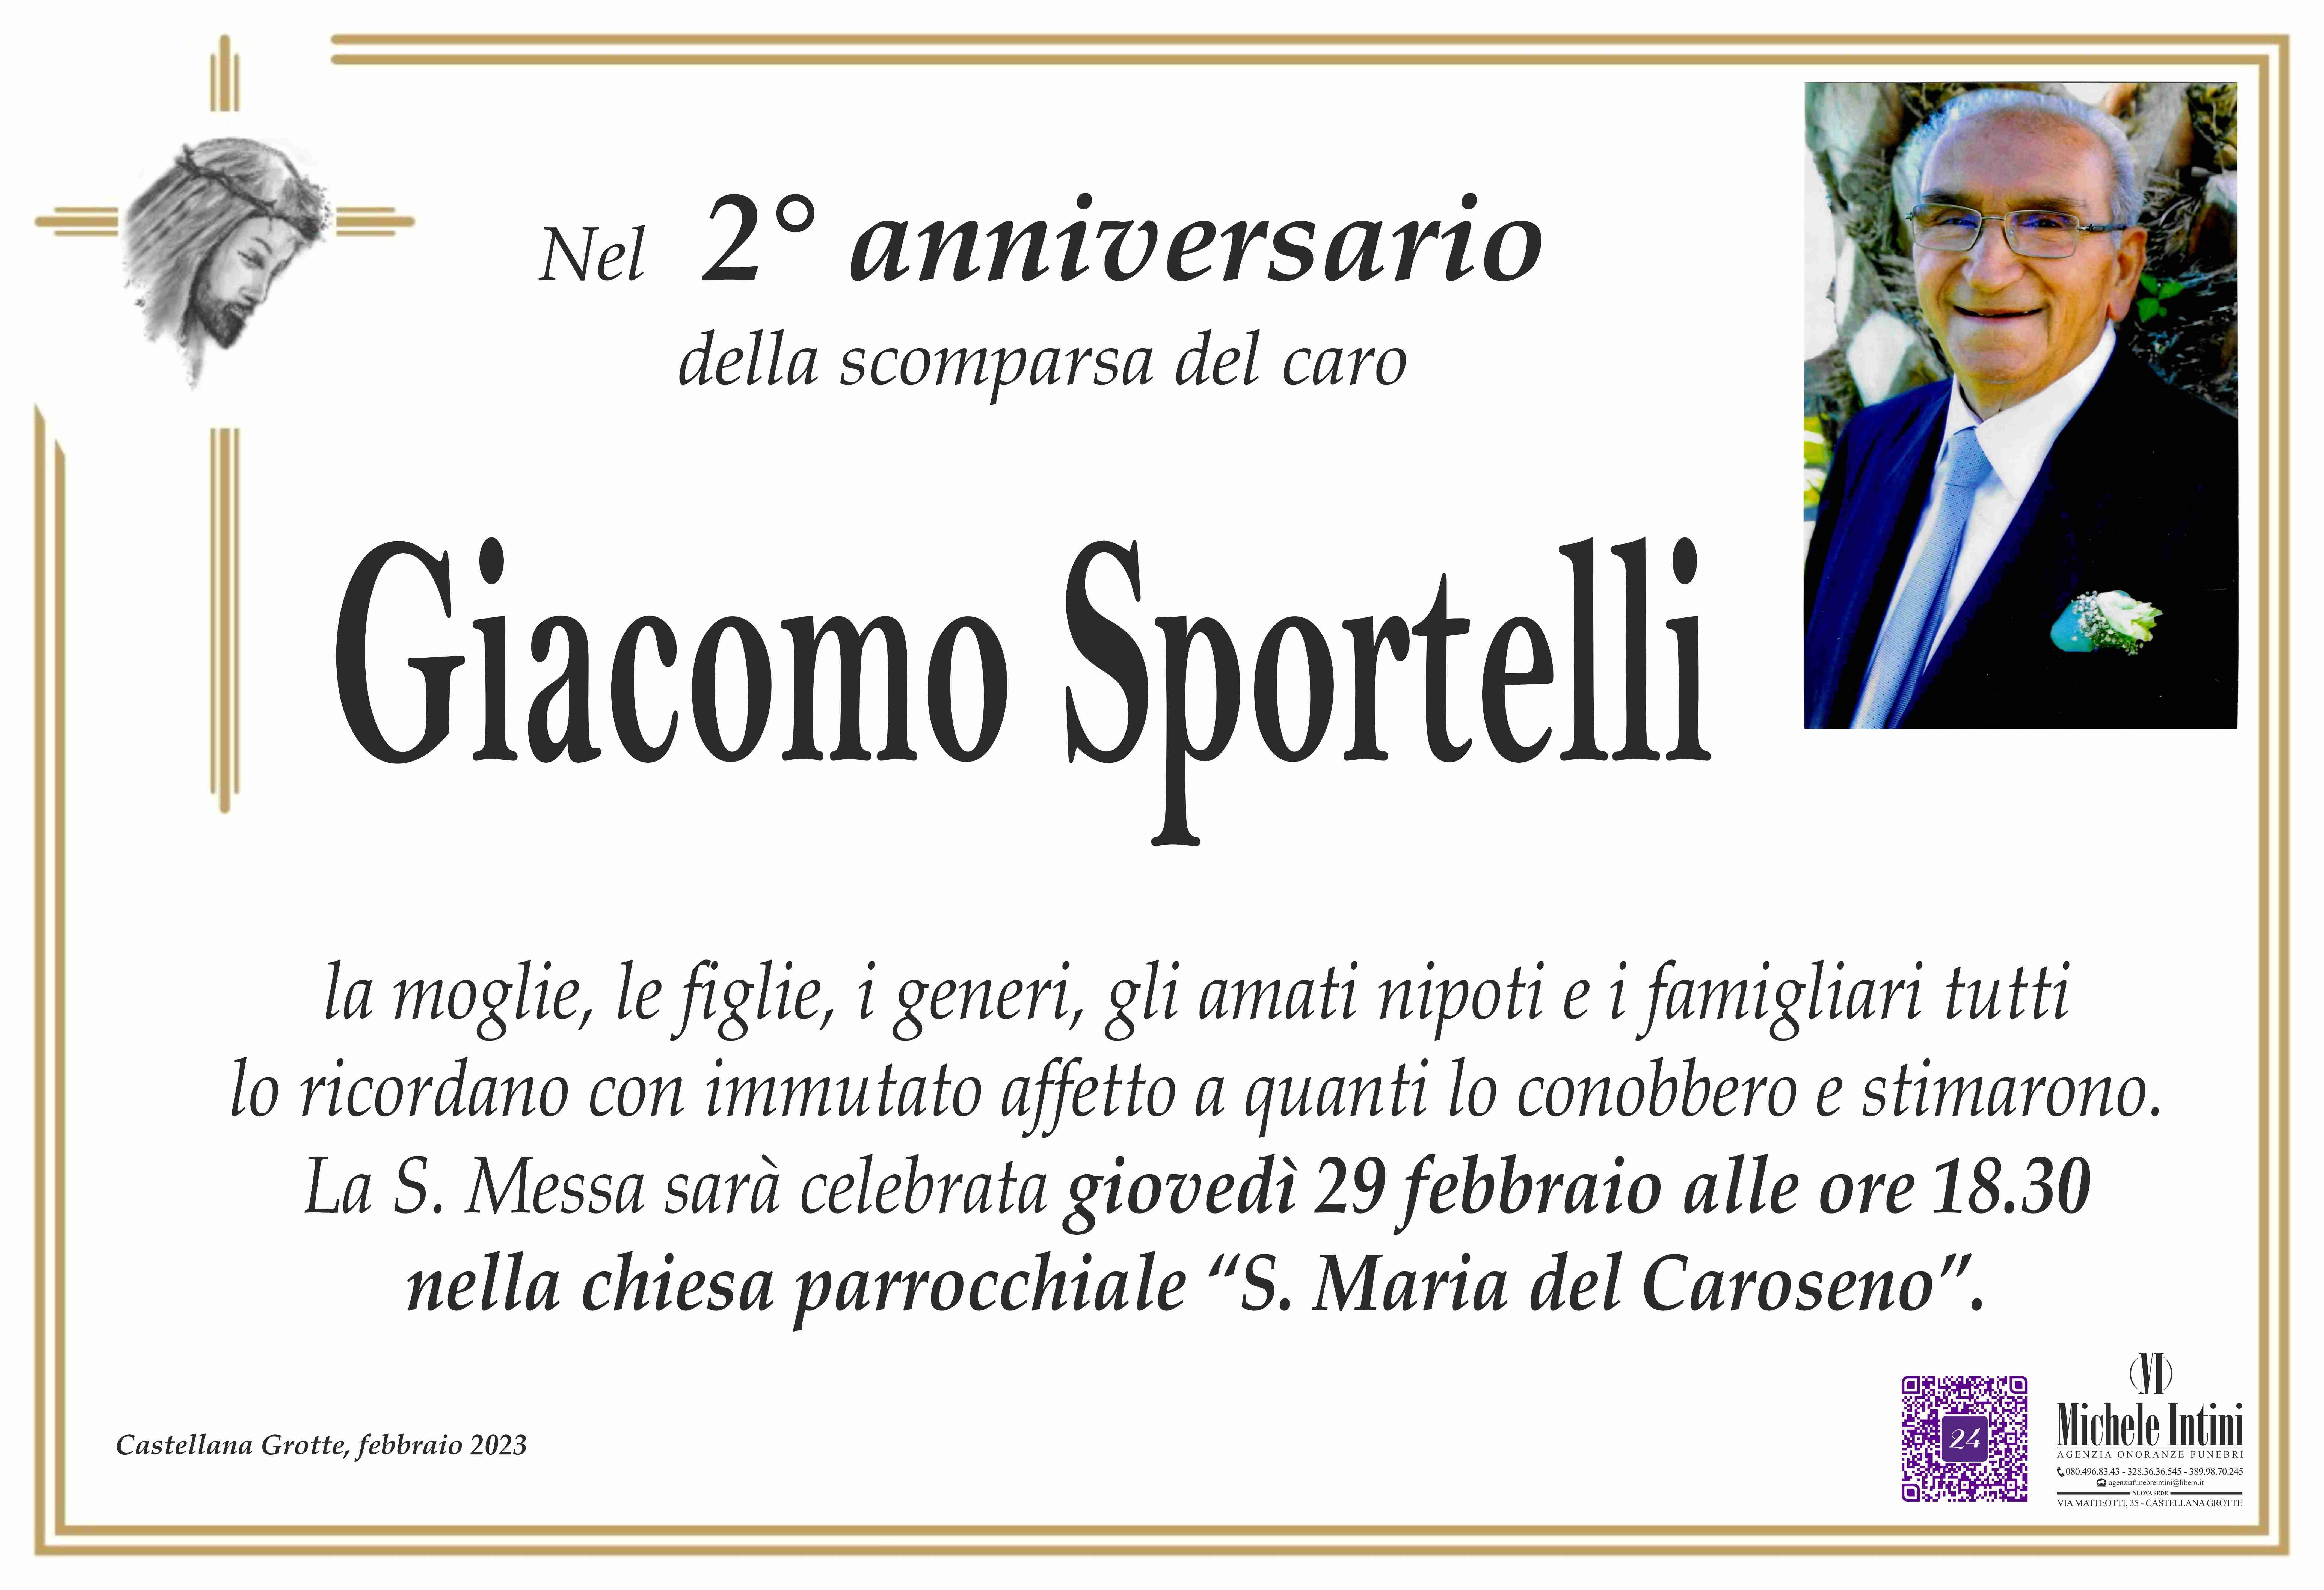 Giacomo Sportelli